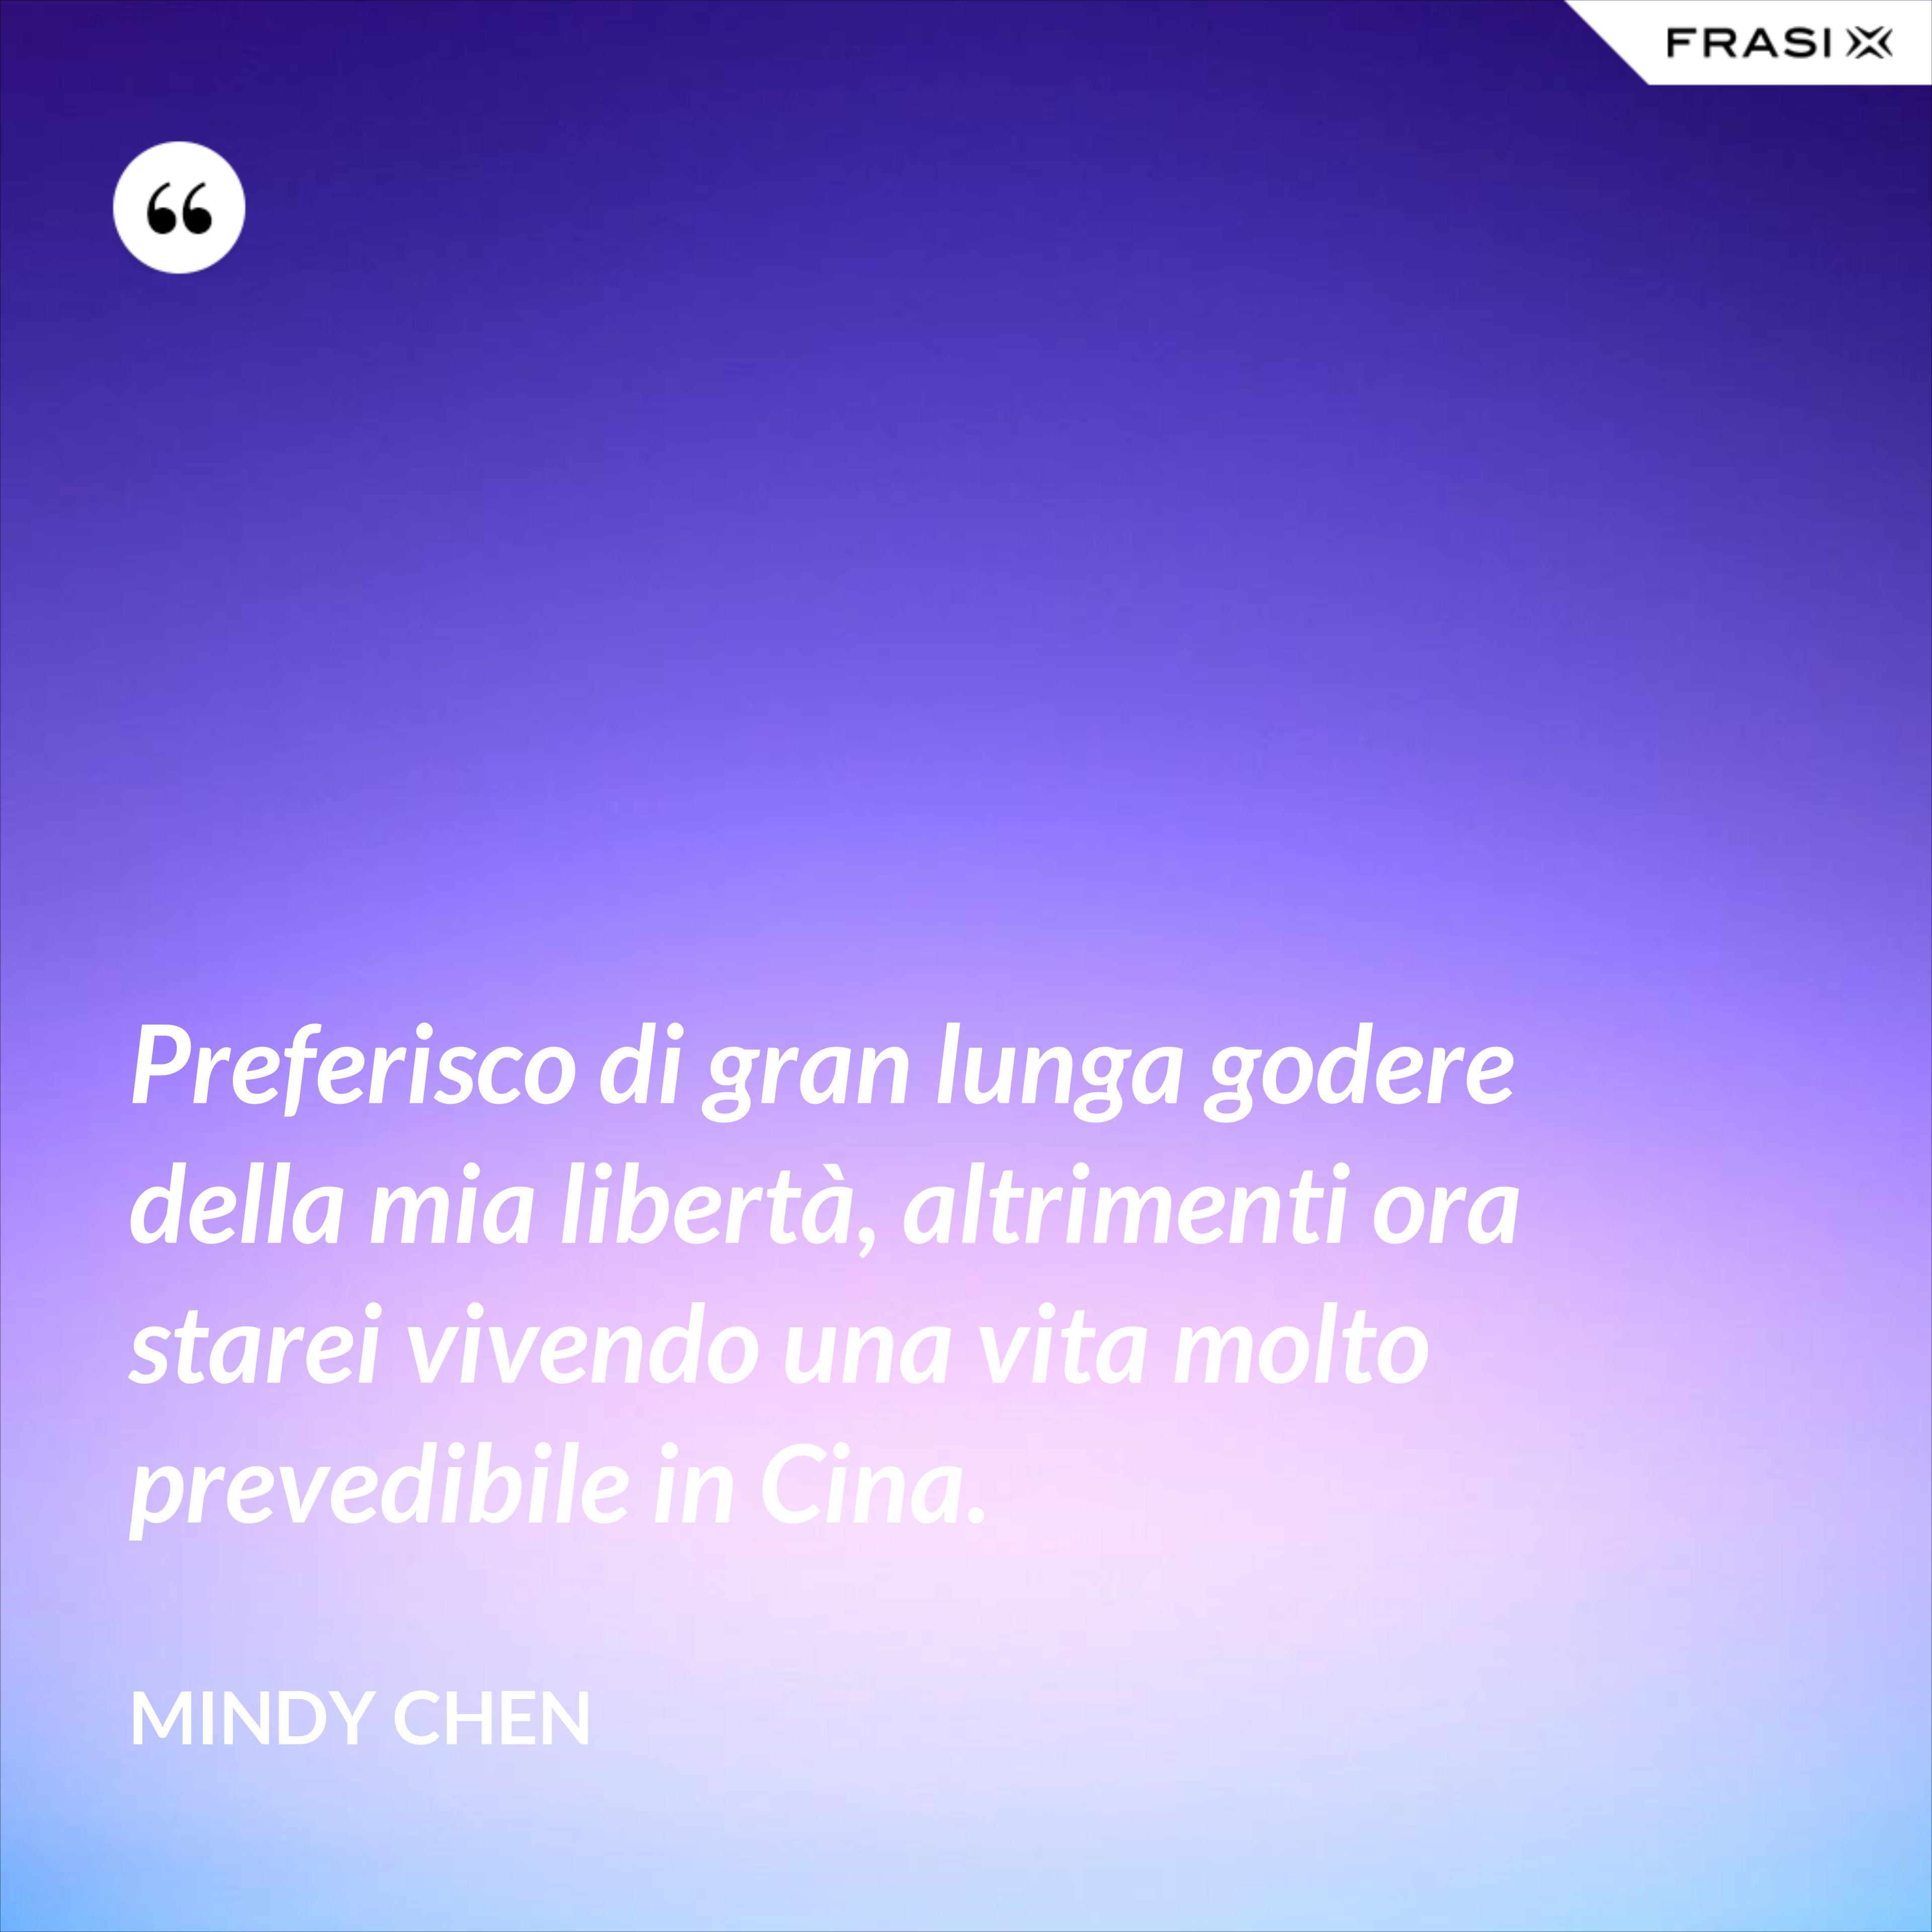 Preferisco di gran lunga godere della mia libertà, altrimenti ora starei vivendo una vita molto prevedibile in Cina. - Mindy Chen